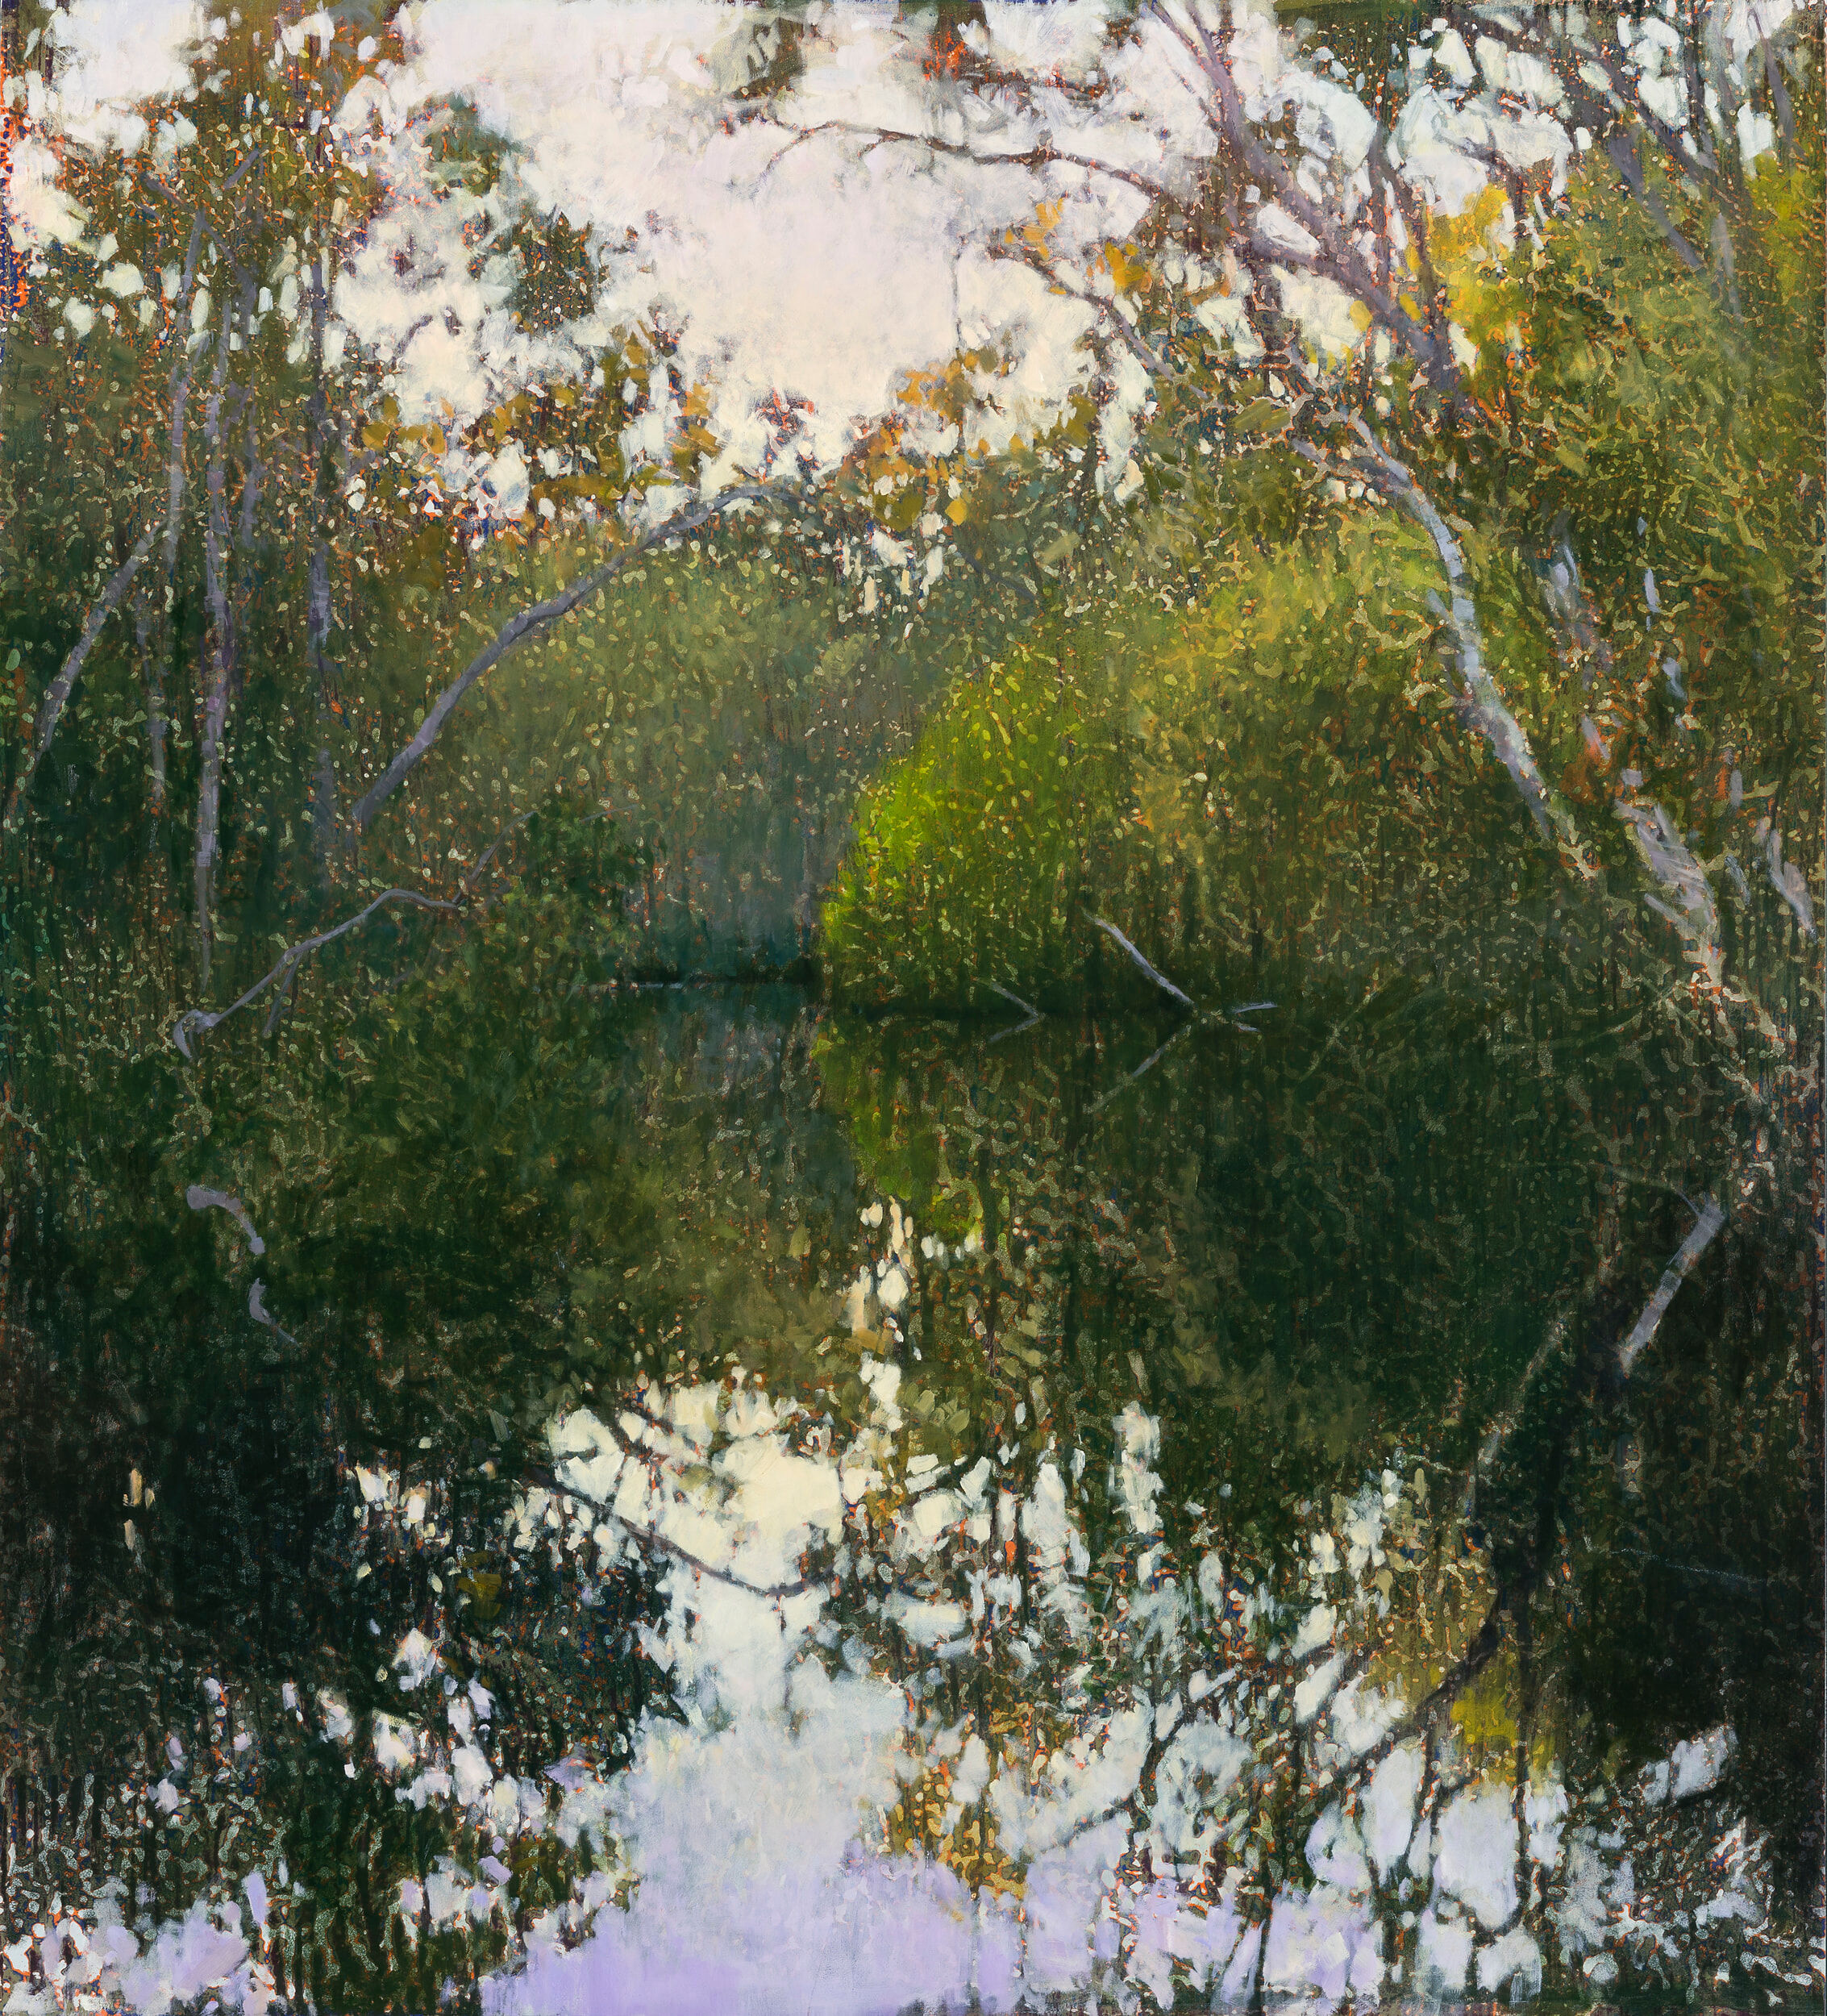 AJ Taylor, Early Morning, Murdering Creek, 2020, oil on board, 91.5 x 82.5 cm